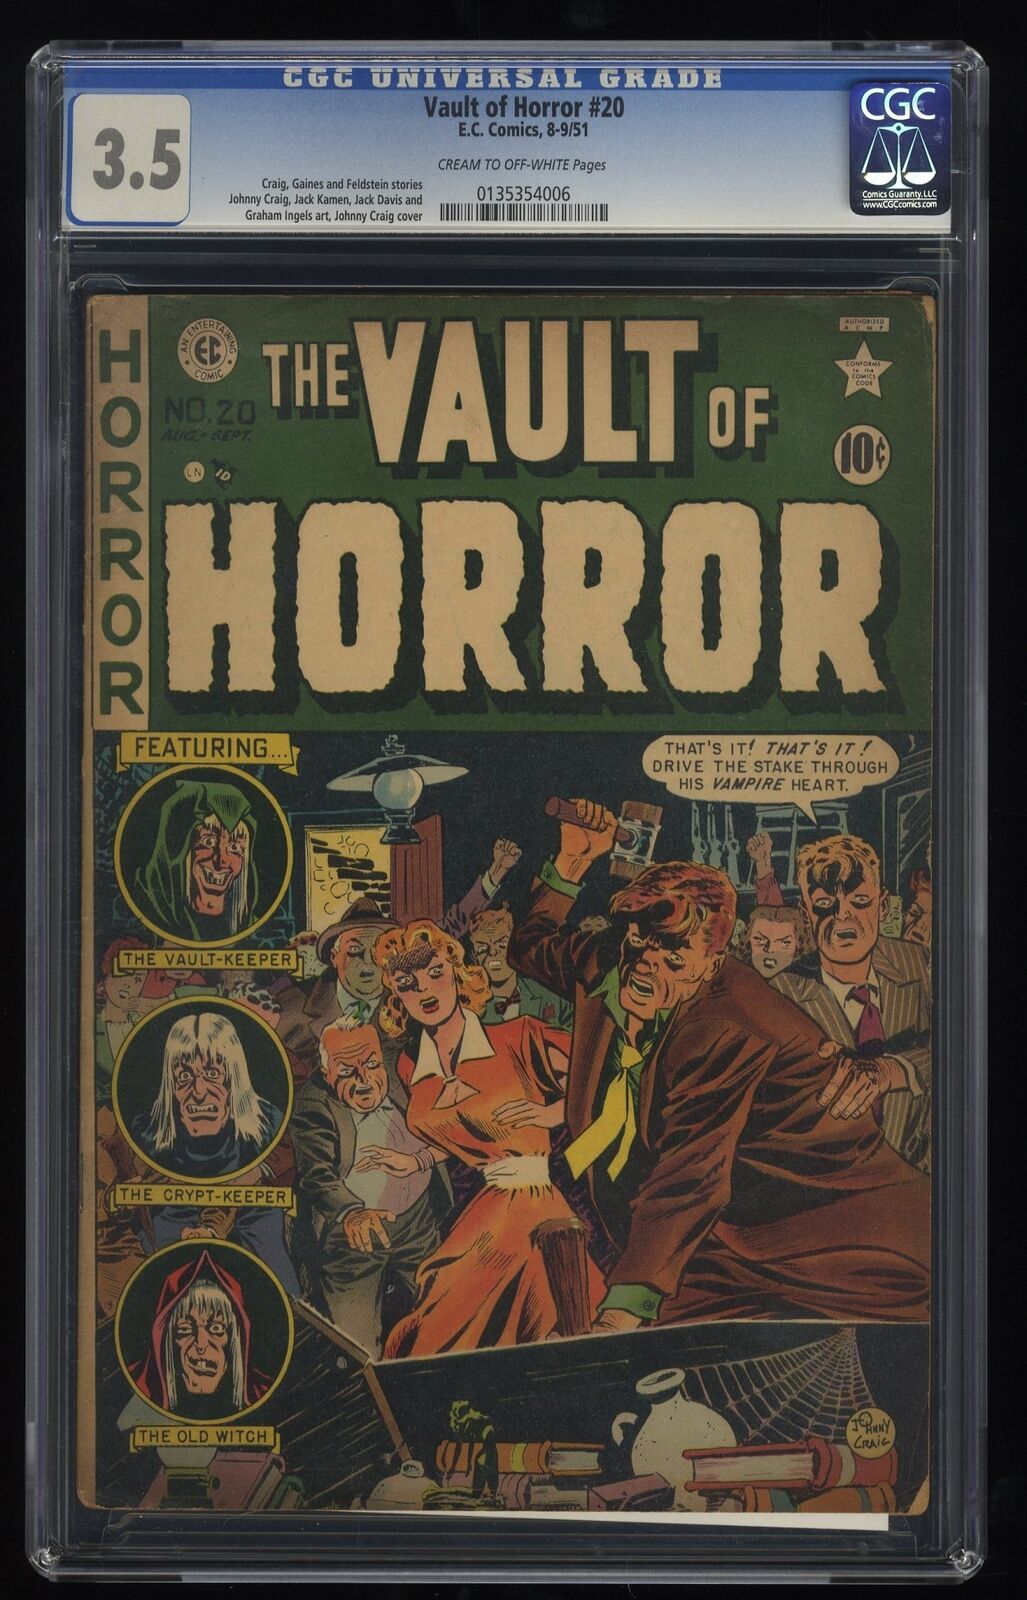 Vault of Horror #20 CGC VG- 3.5 Classic EC Comics EC 1951